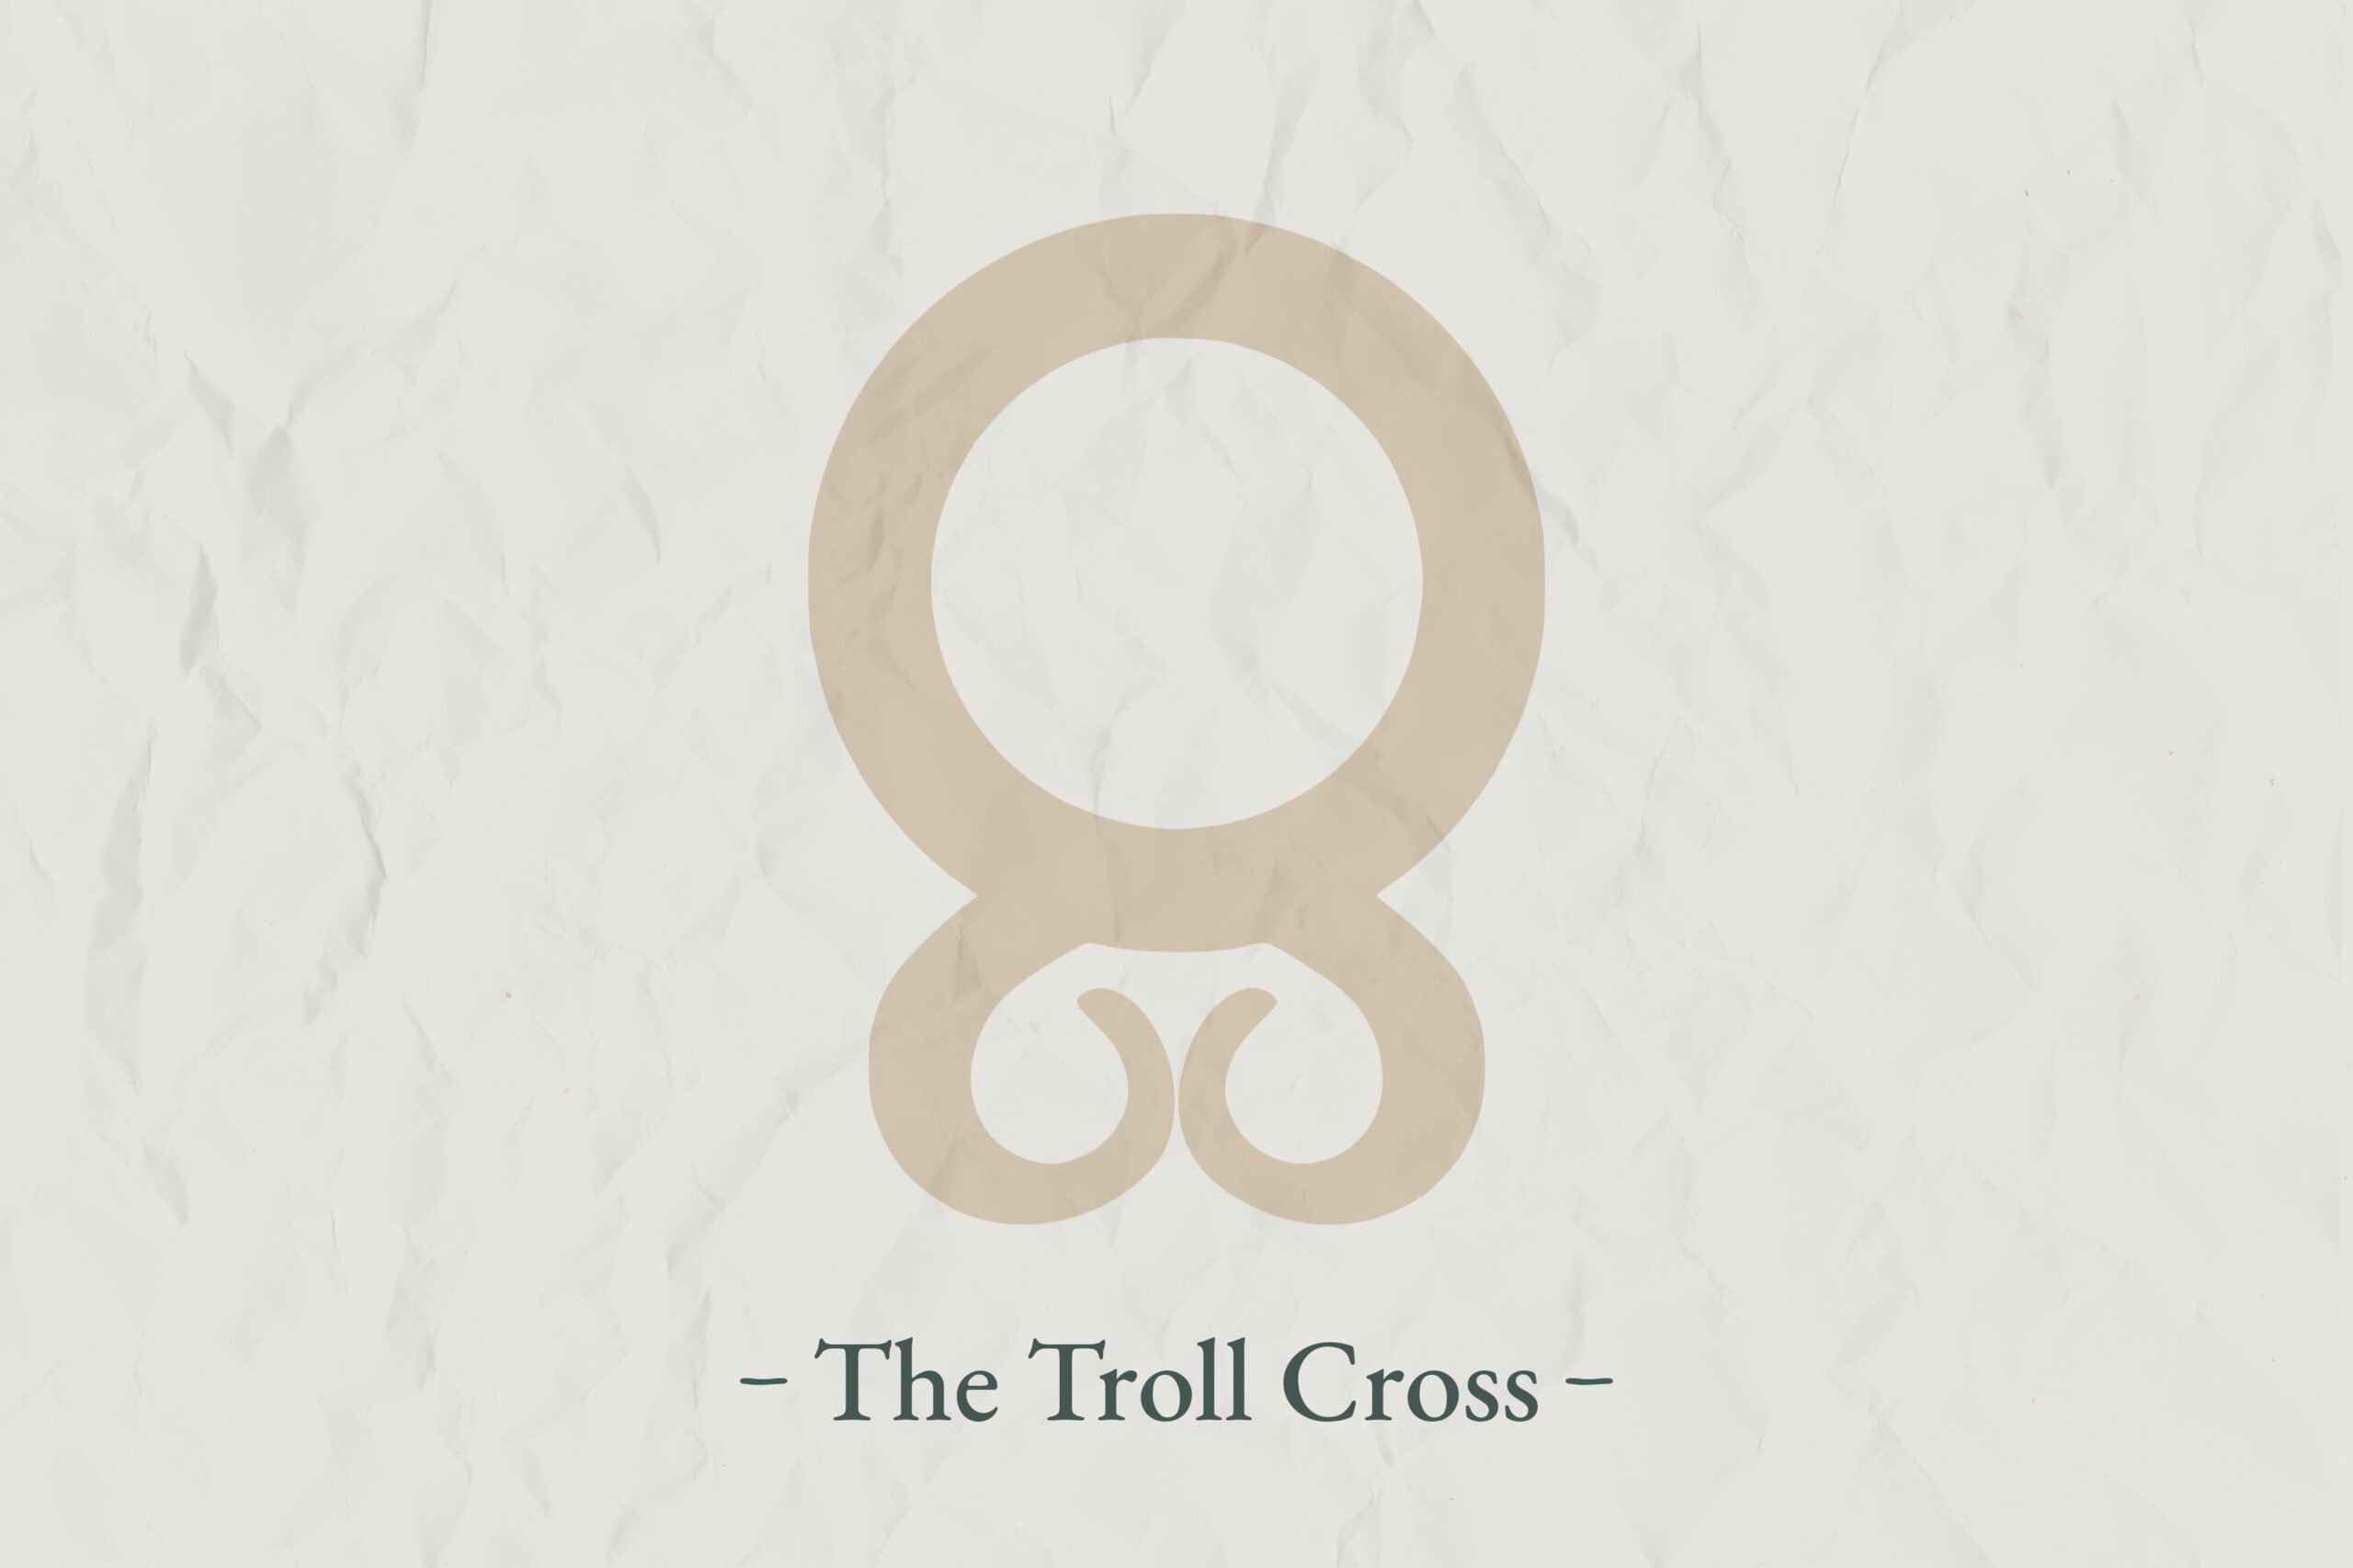 The Troll Cross